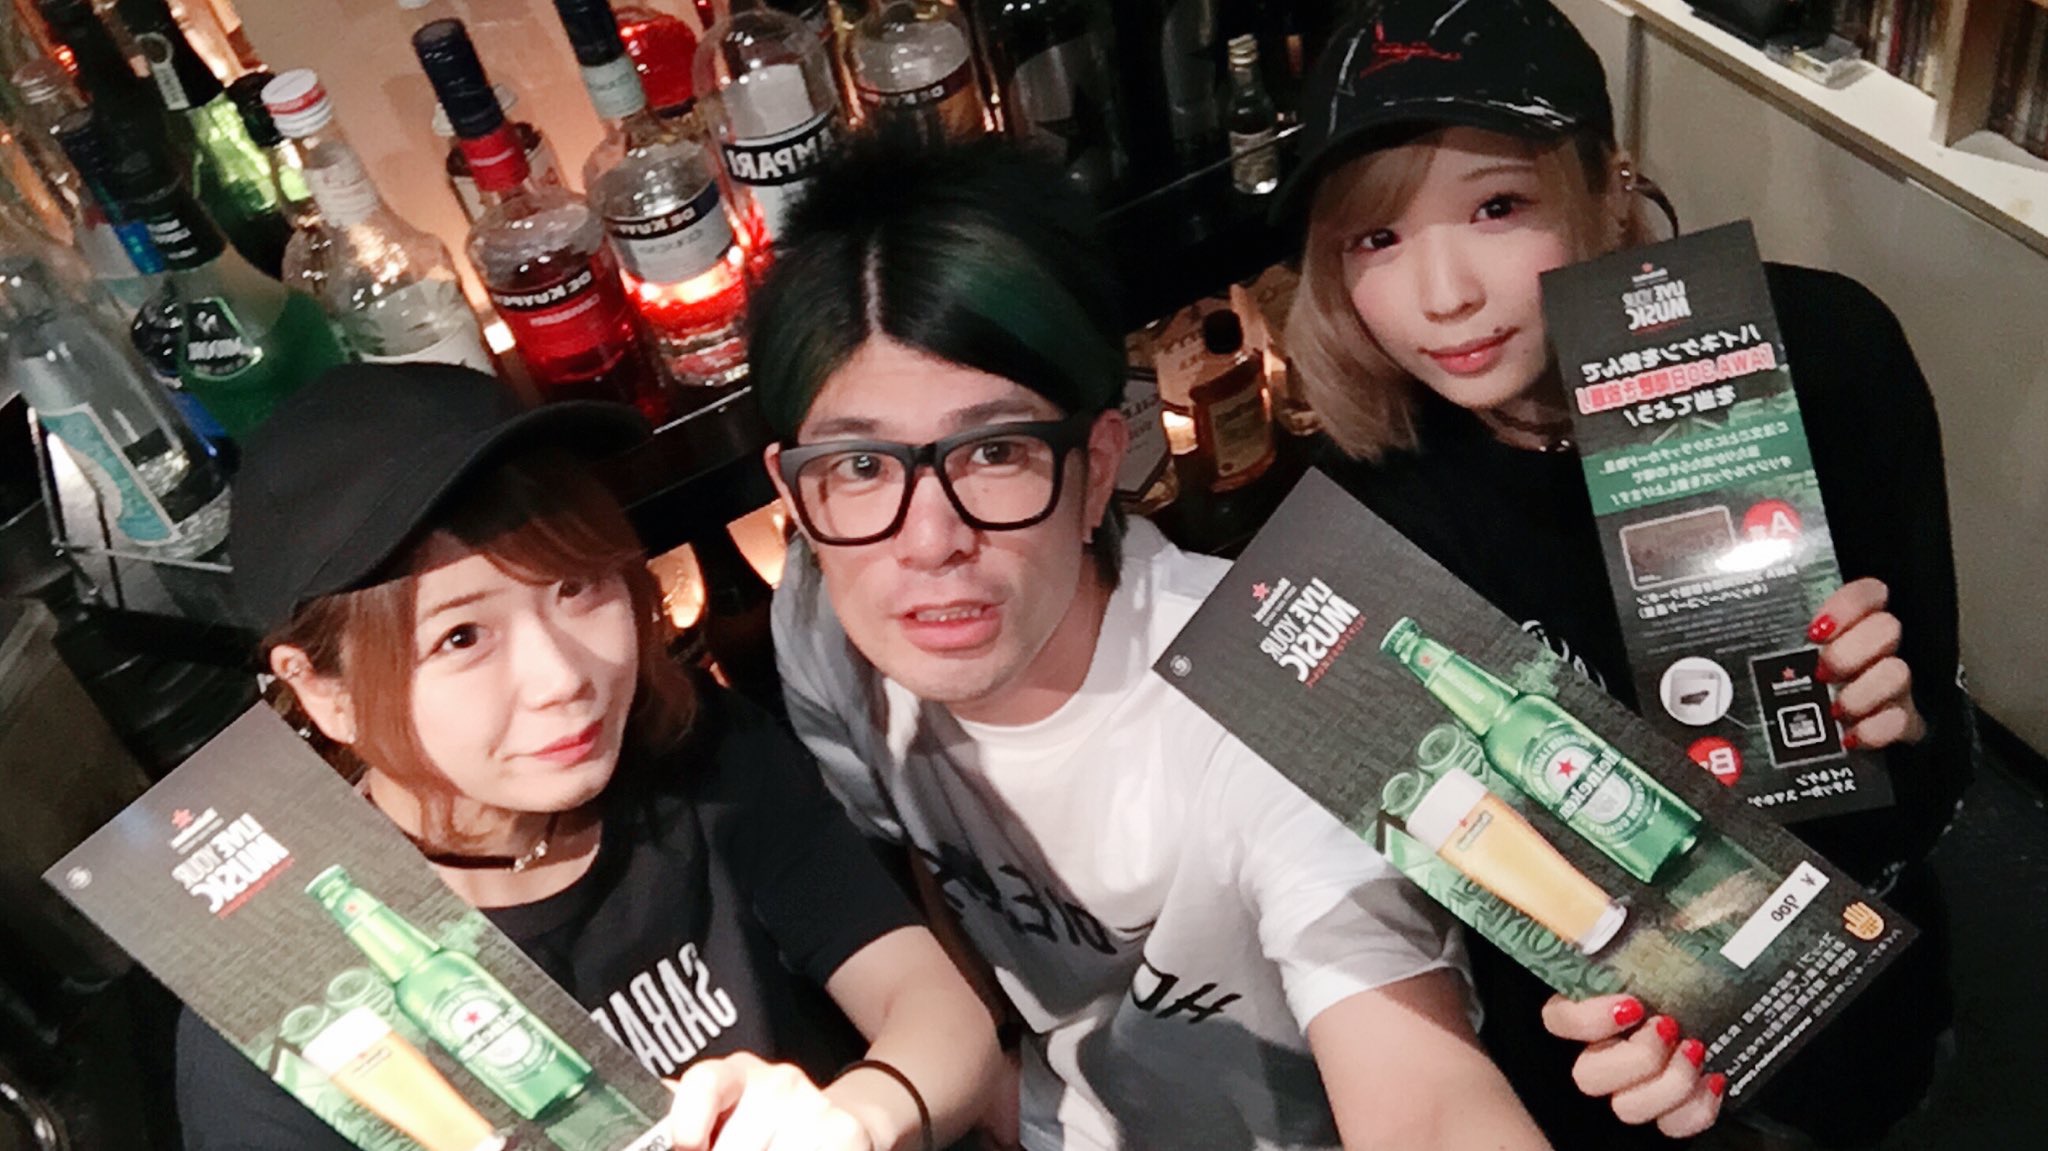 http://bar-rockaholic.jp/shibuya/blog/IMG_5292.JPG